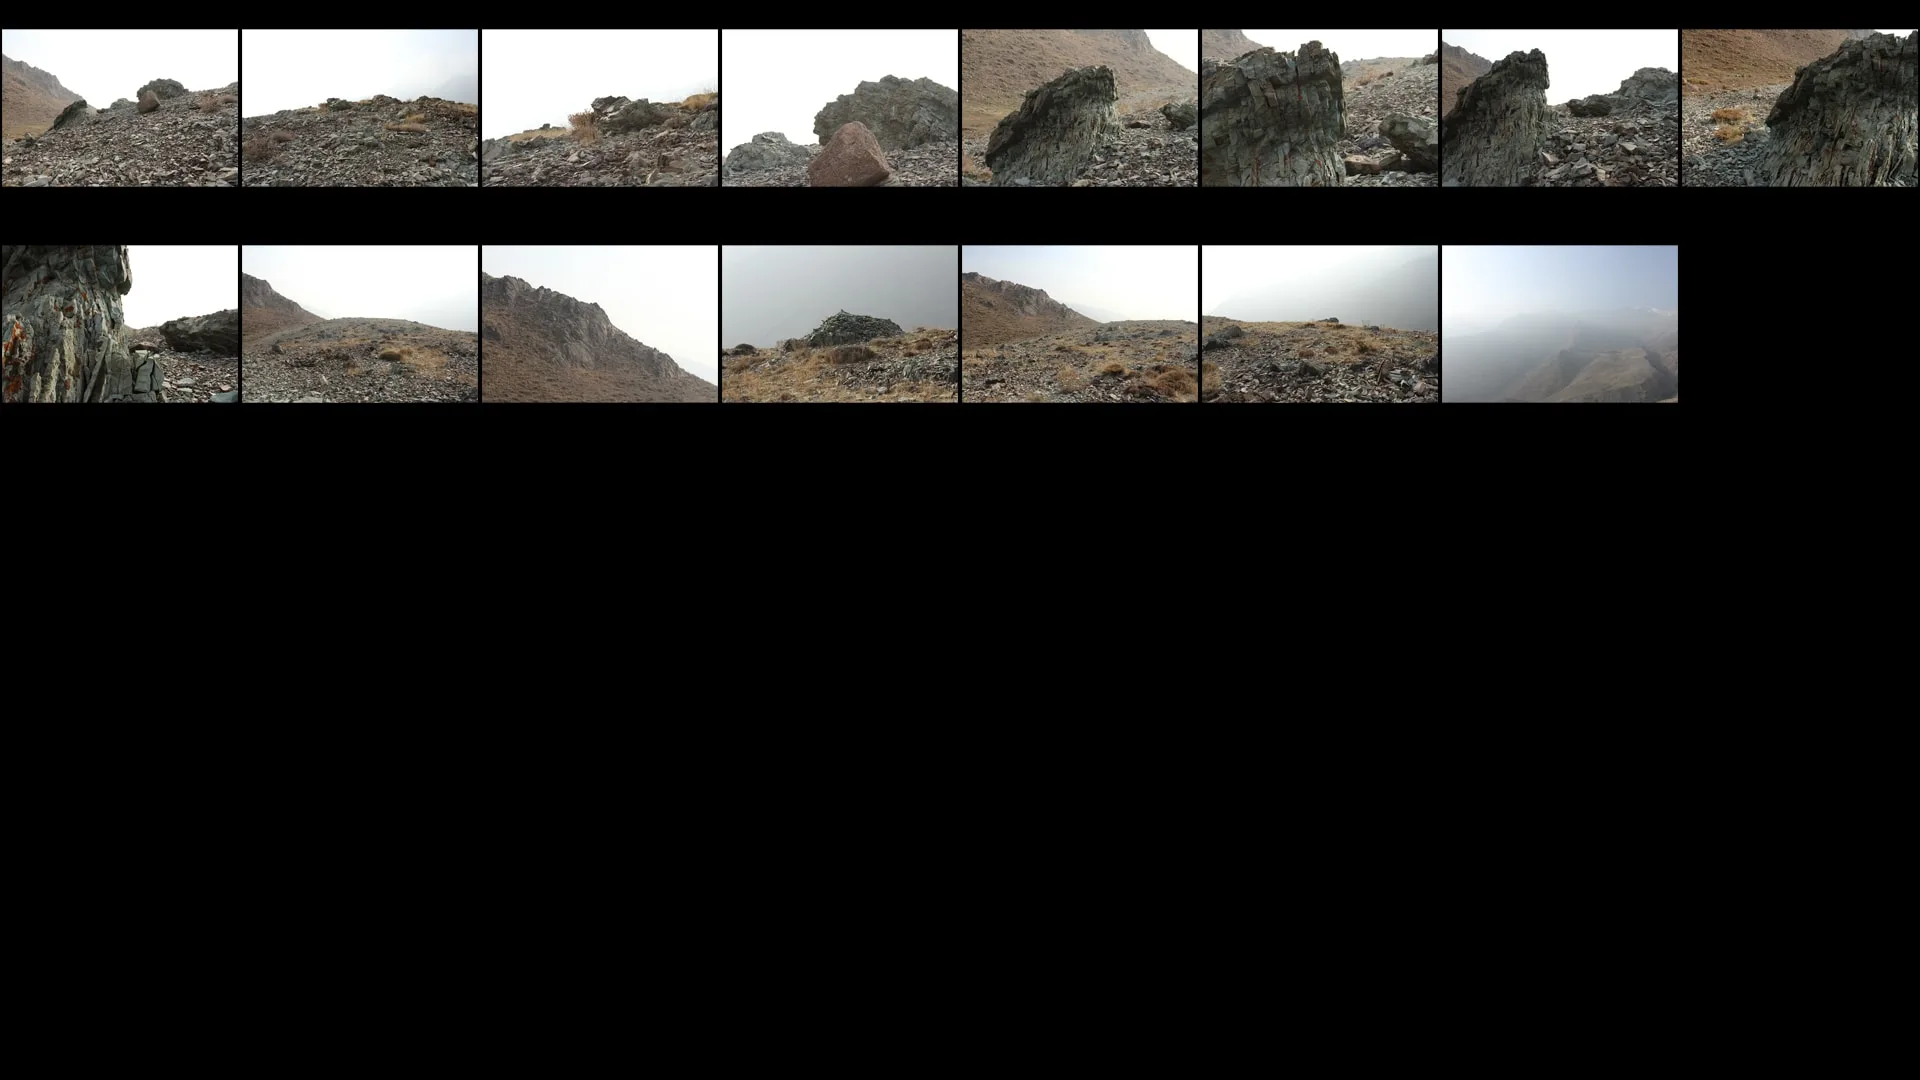 RAW Photos Of Rocks & Mountains